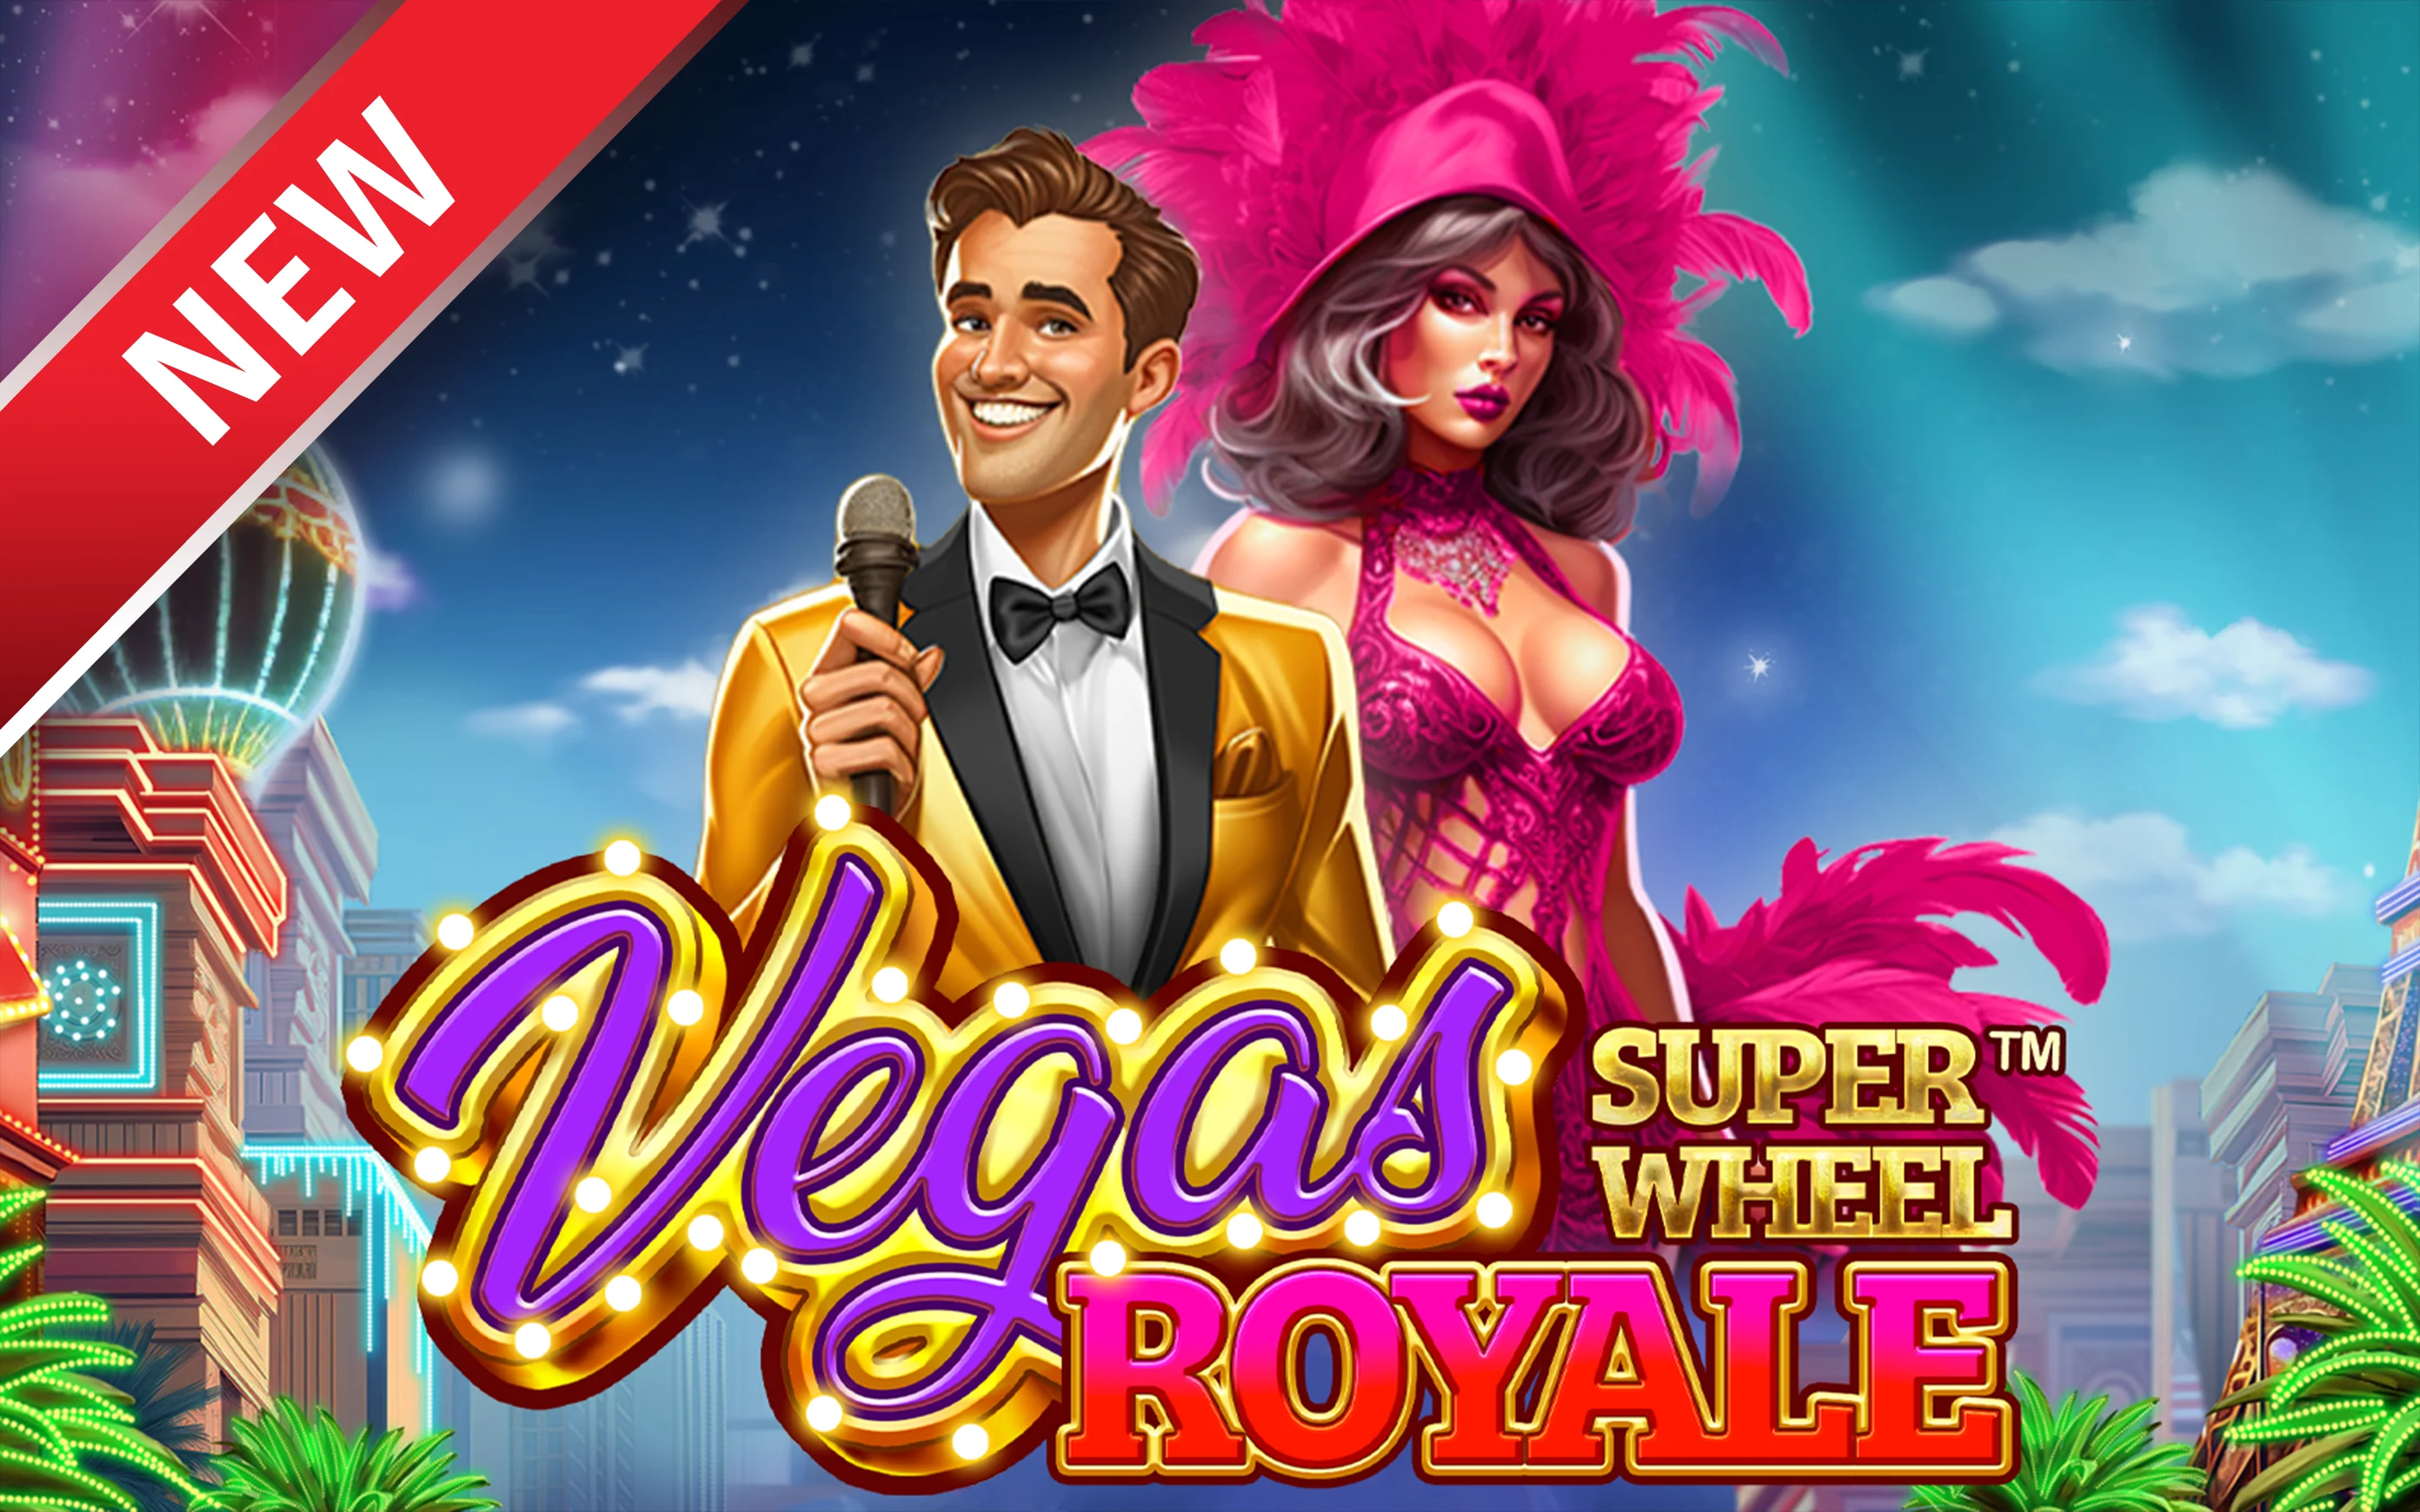 Spielen Sie Vegas Royale Super Wheel™ auf Starcasino.be-Online-Casino